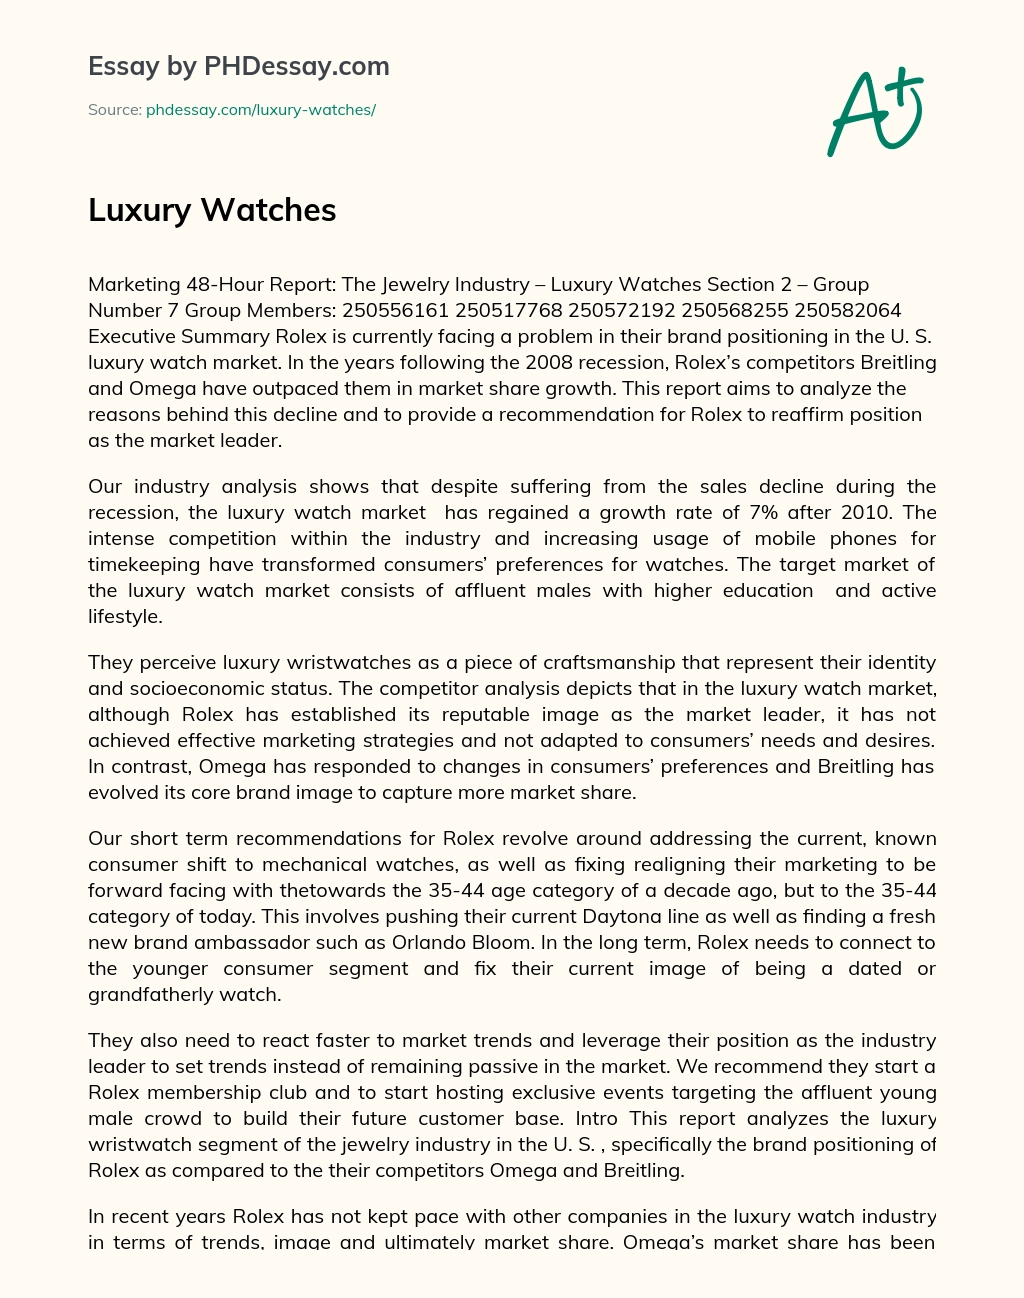 Luxury Watches essay